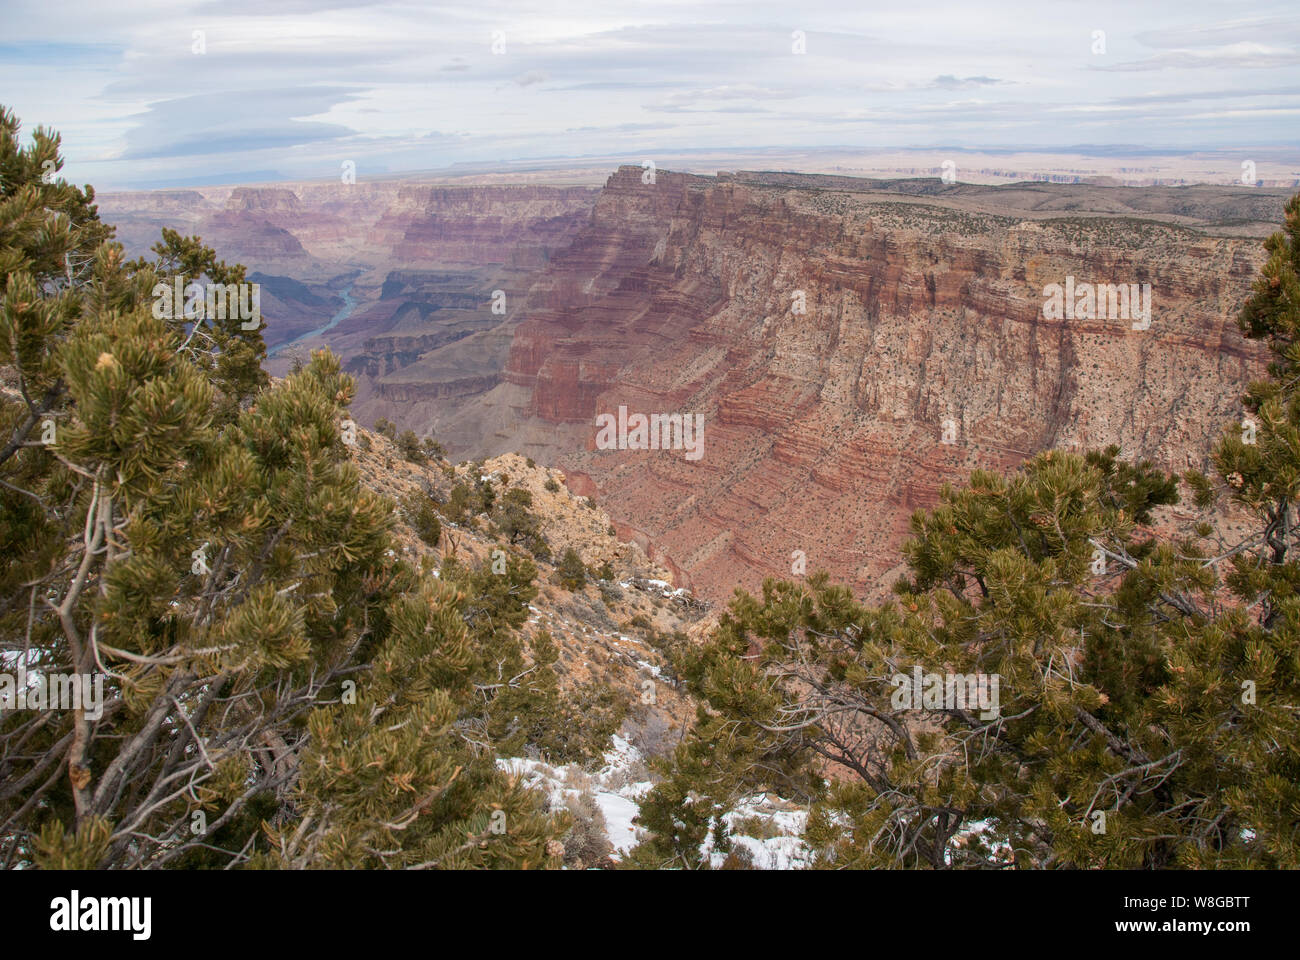 Tempo in inverno il Grand Canyon quando la neve è scesa e mostra la in profondità la bellezza di una delle sette meraviglie del mondo. Foto Stock